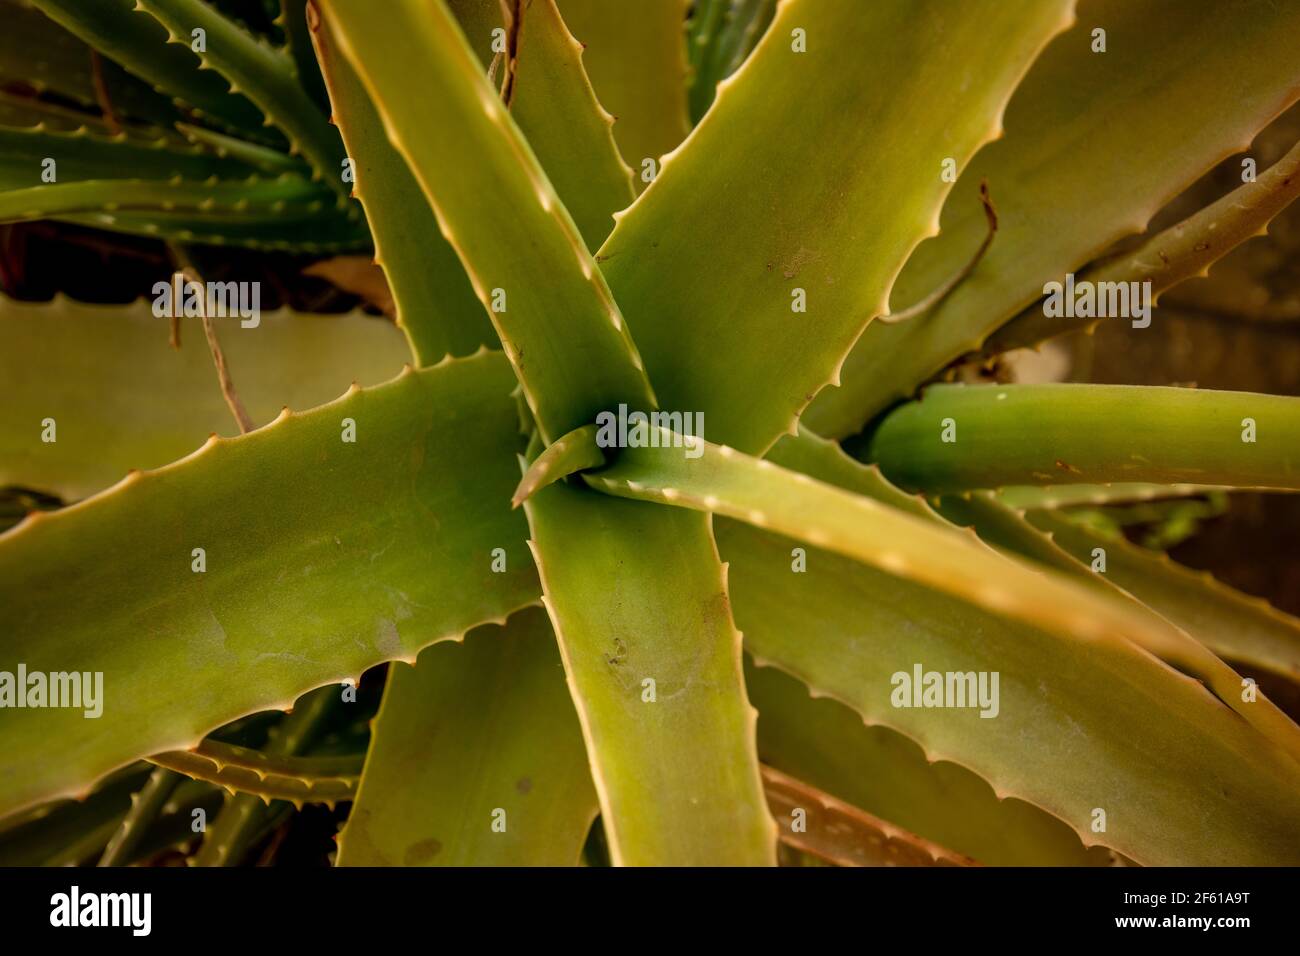 An aloe vera plant close up Stock Photo